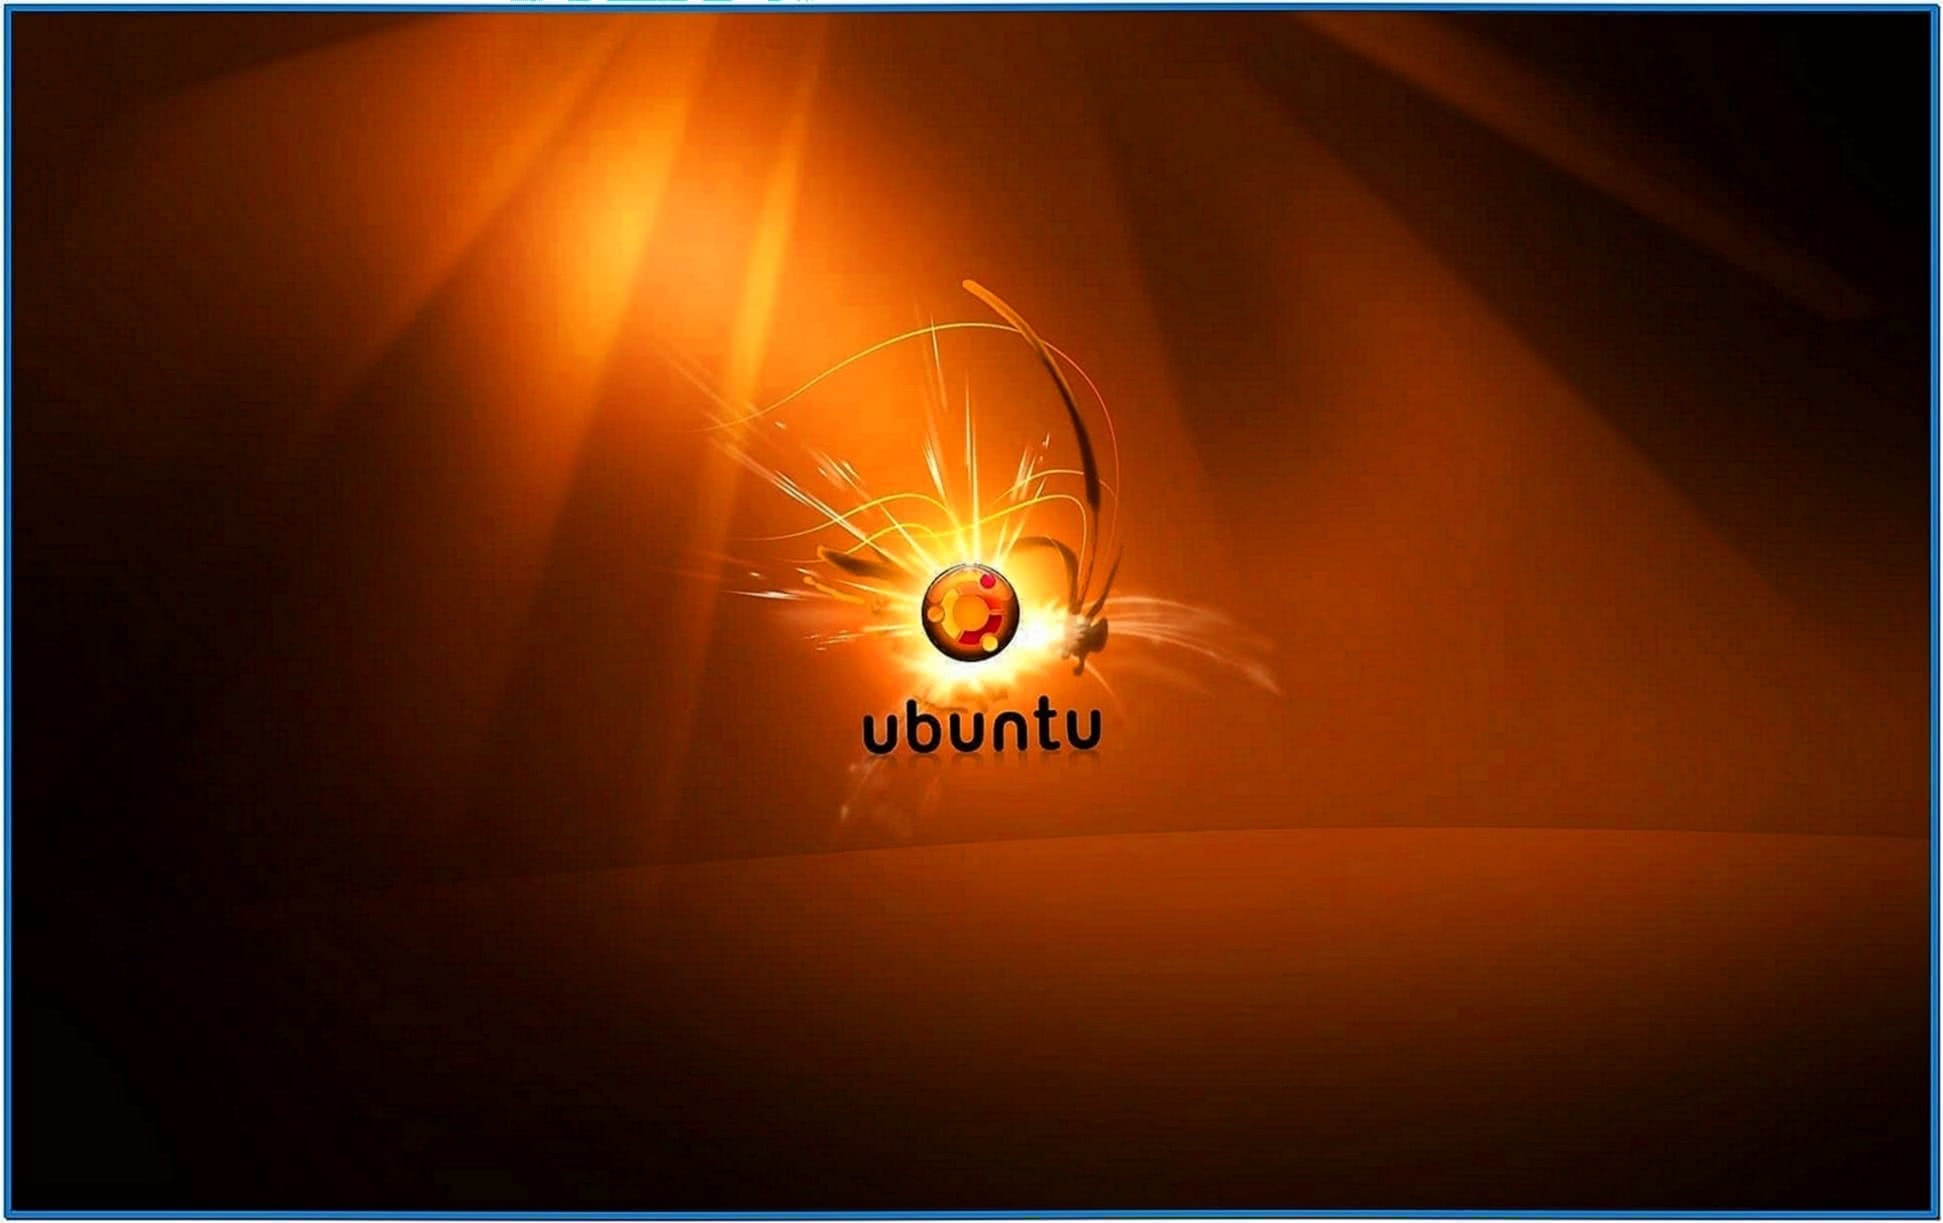 Screensaver Pictures Ubuntu